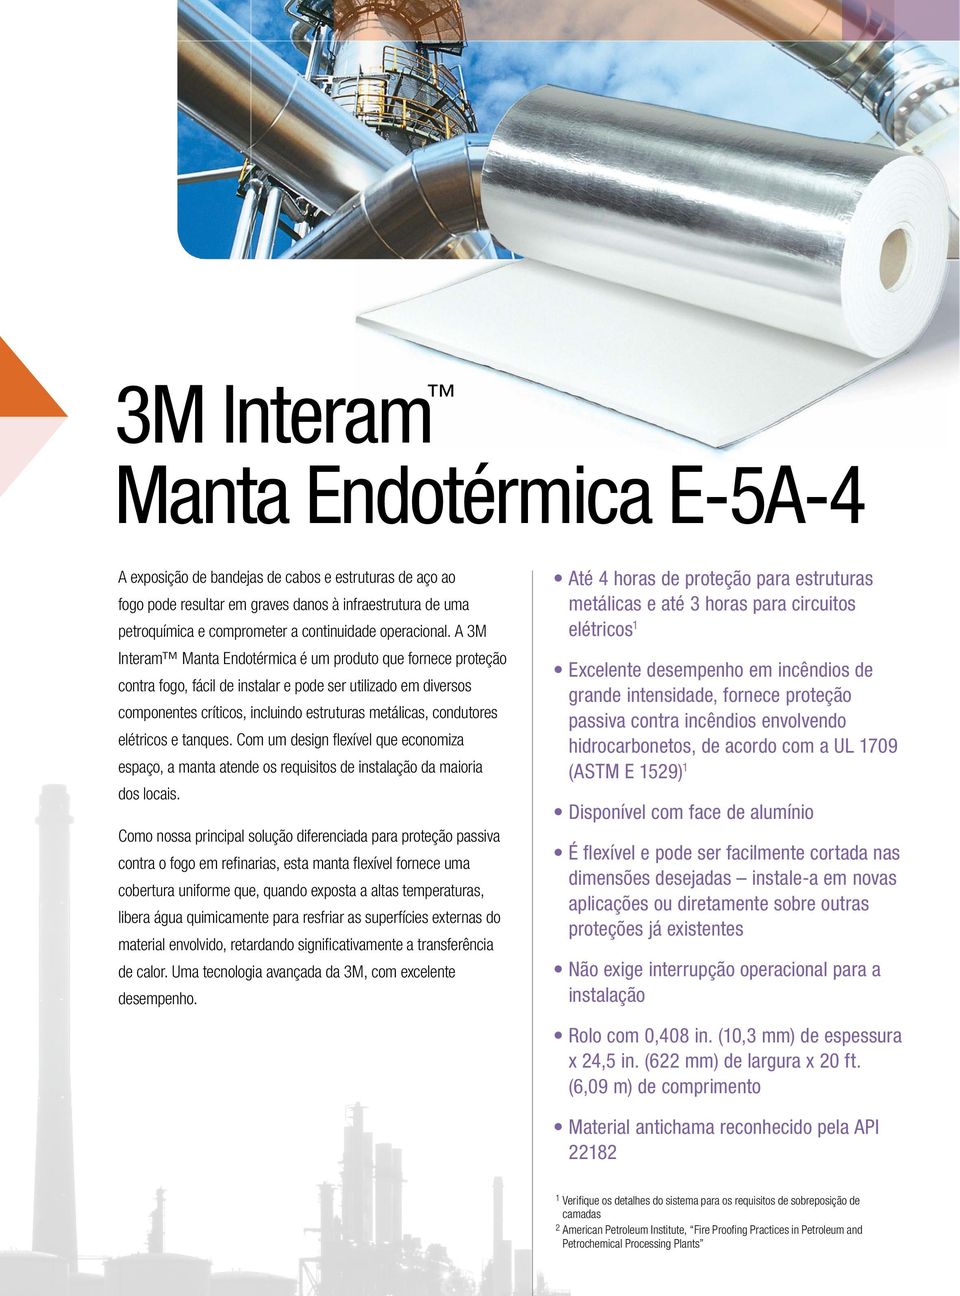 A 3M Interam Manta Endotérmica é um produto que fornece proteção contra fogo, fácil de instalar e pode ser utilizado em diversos componentes críticos, incluindo estruturas metálicas, condutores